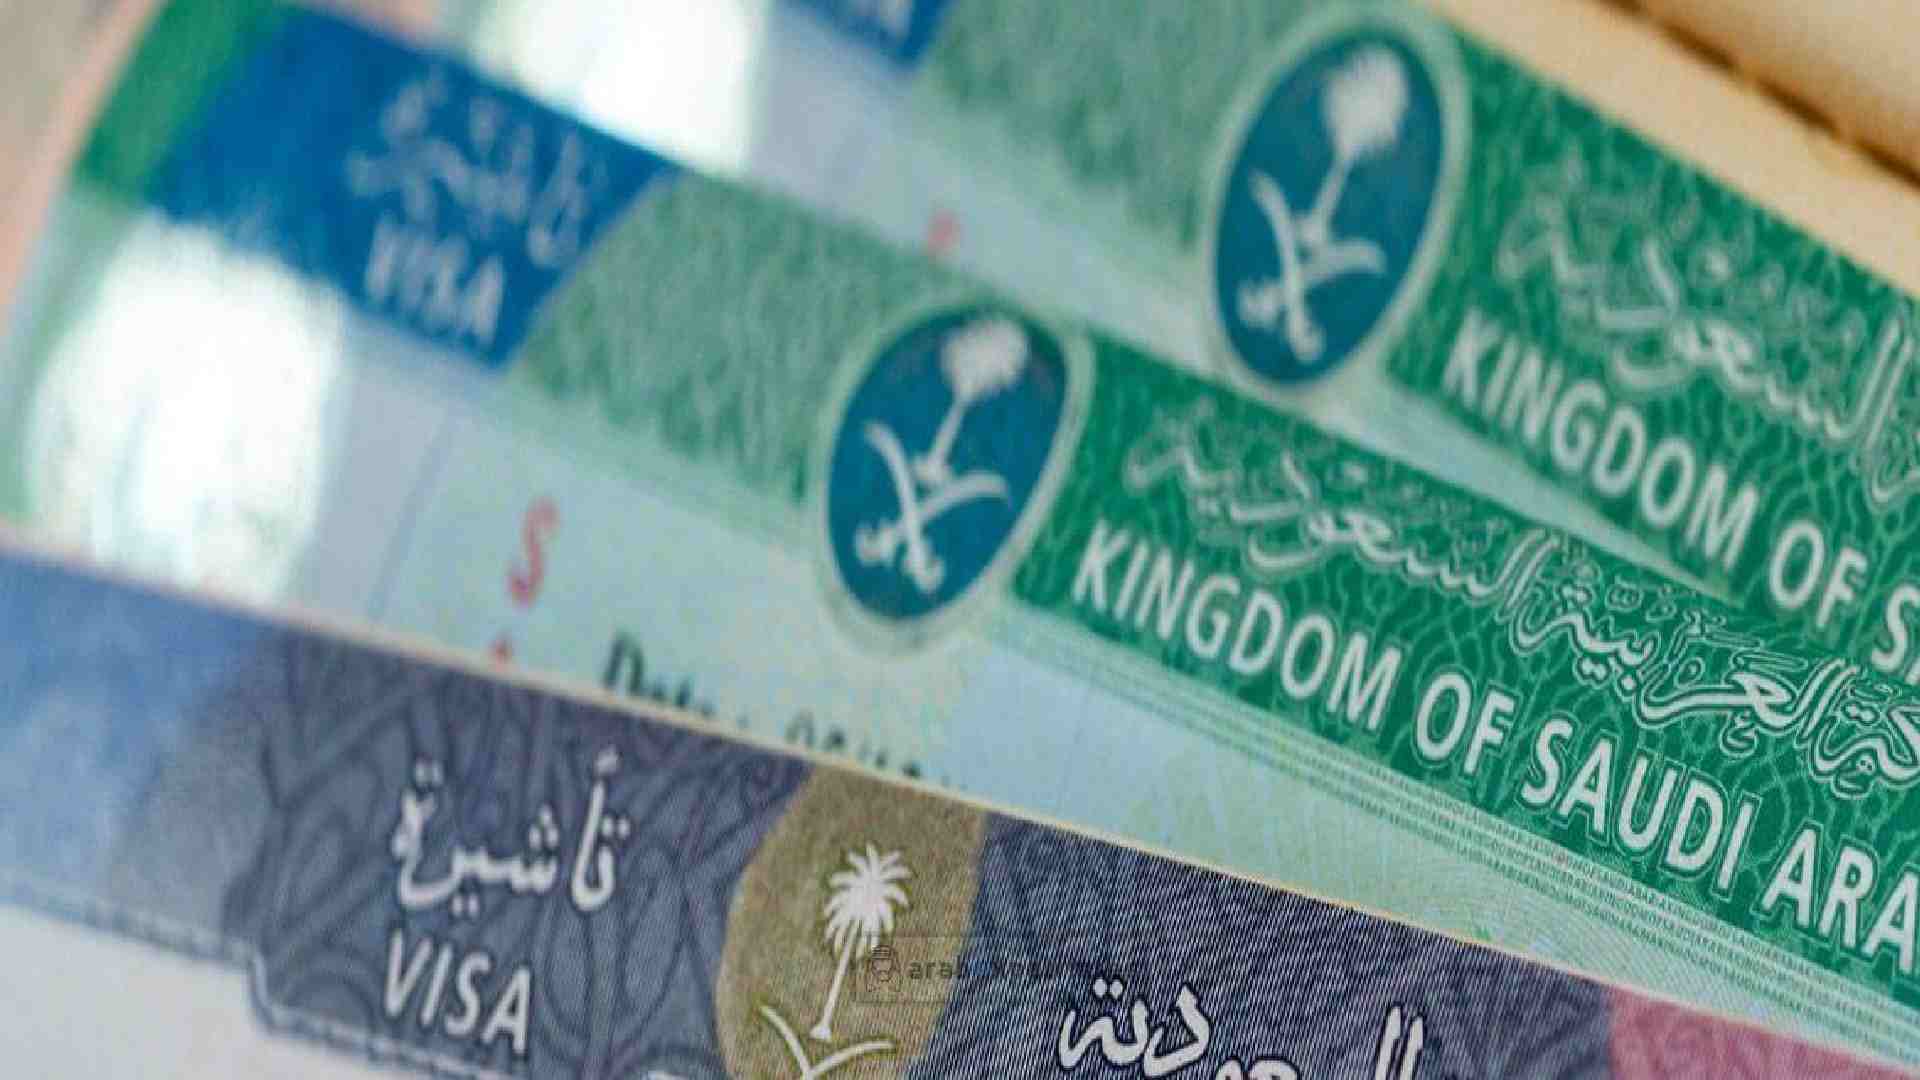 Saudi multiple entry visa for GCC residents